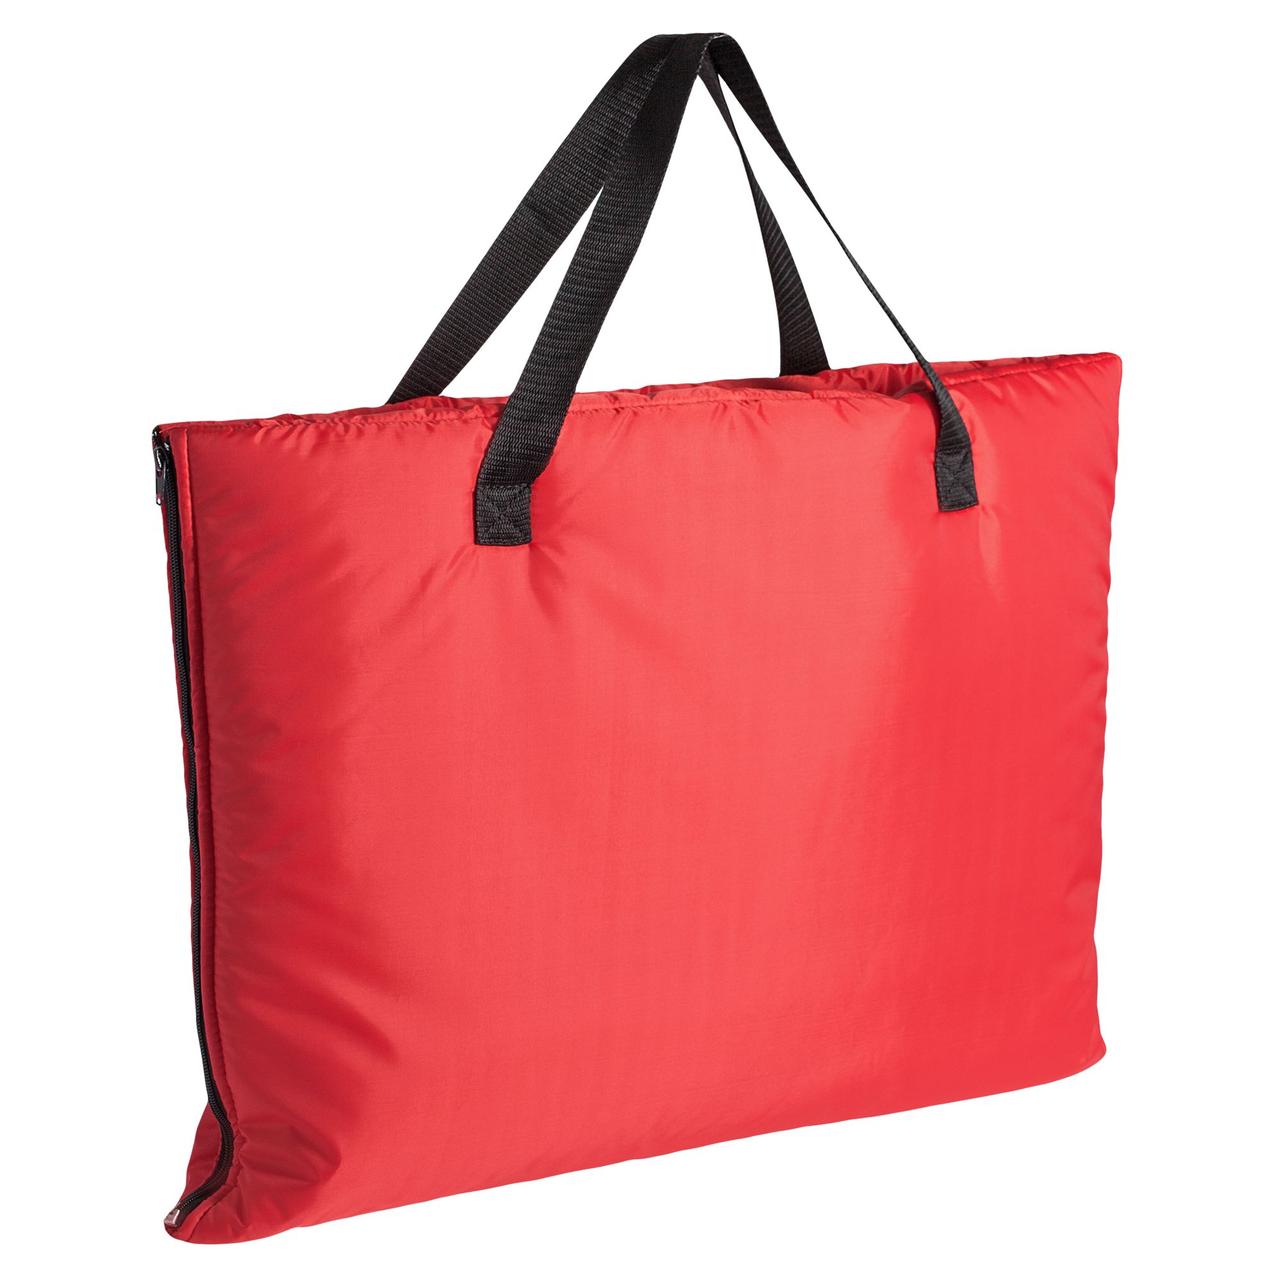 Пляжная сумка-трансформер Camper Bag, красная (артикул 315.50)